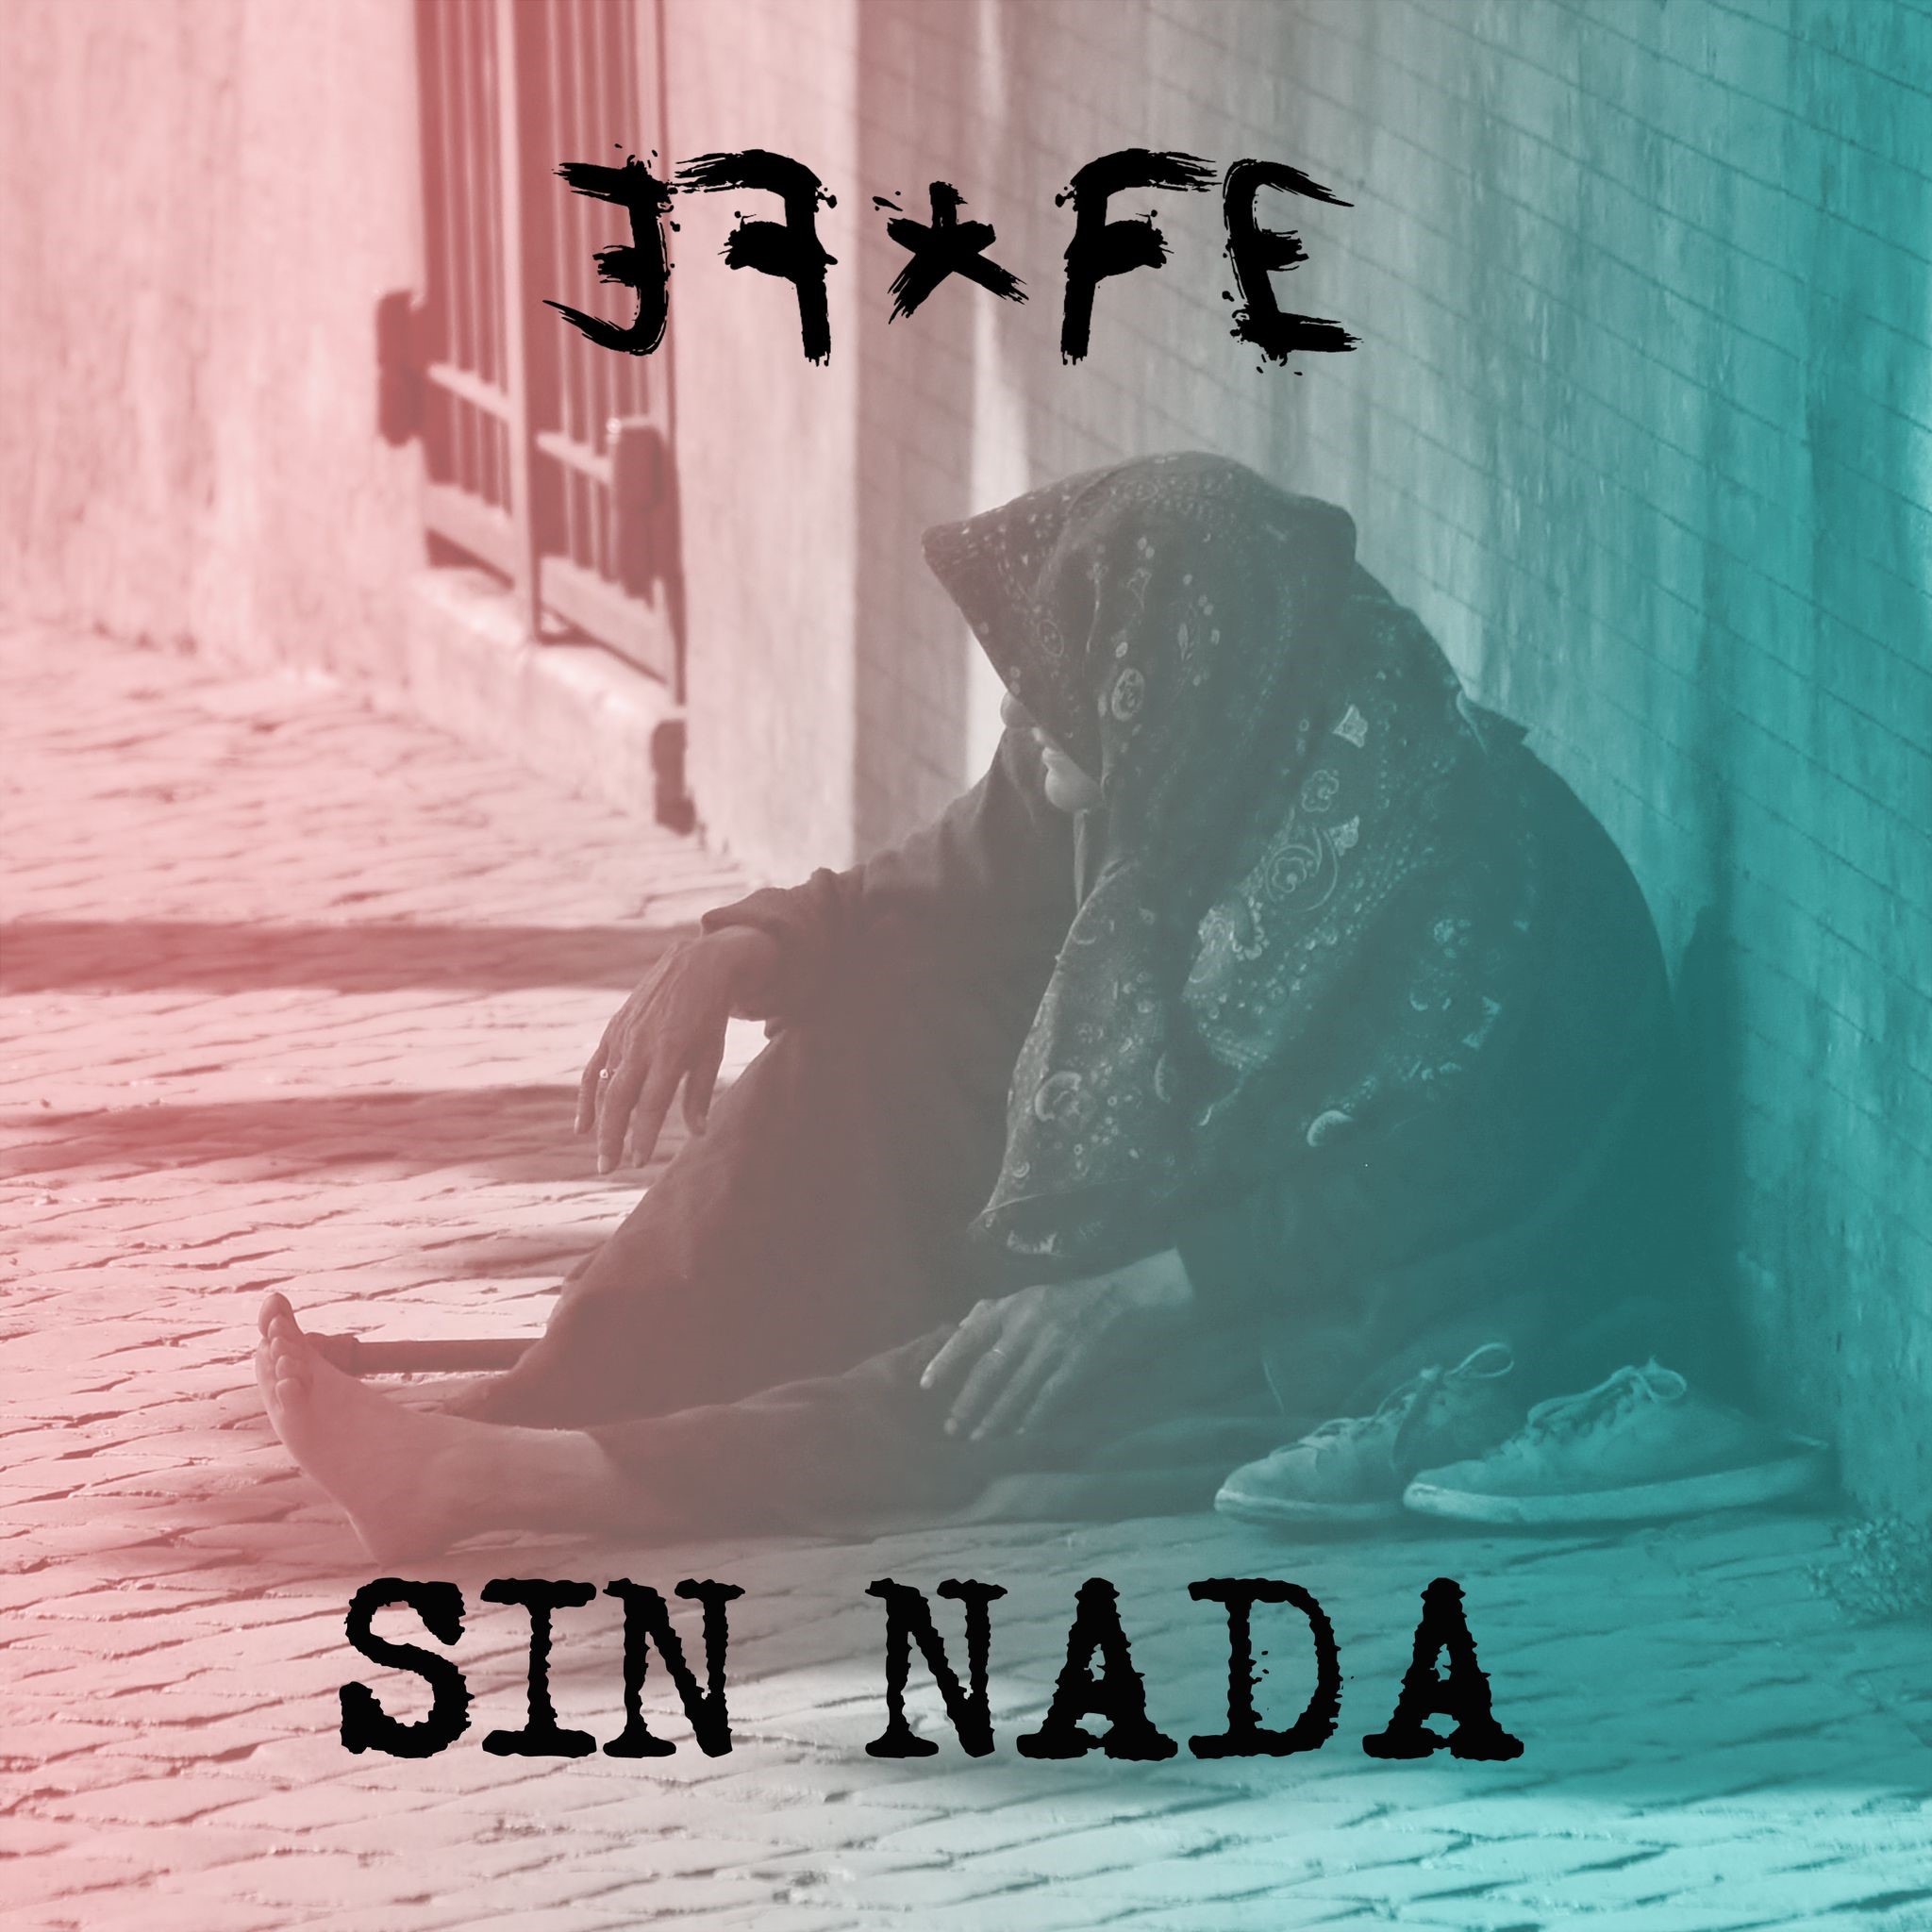 EFFE presenta su segundo nuevo single + primer concierto presentación